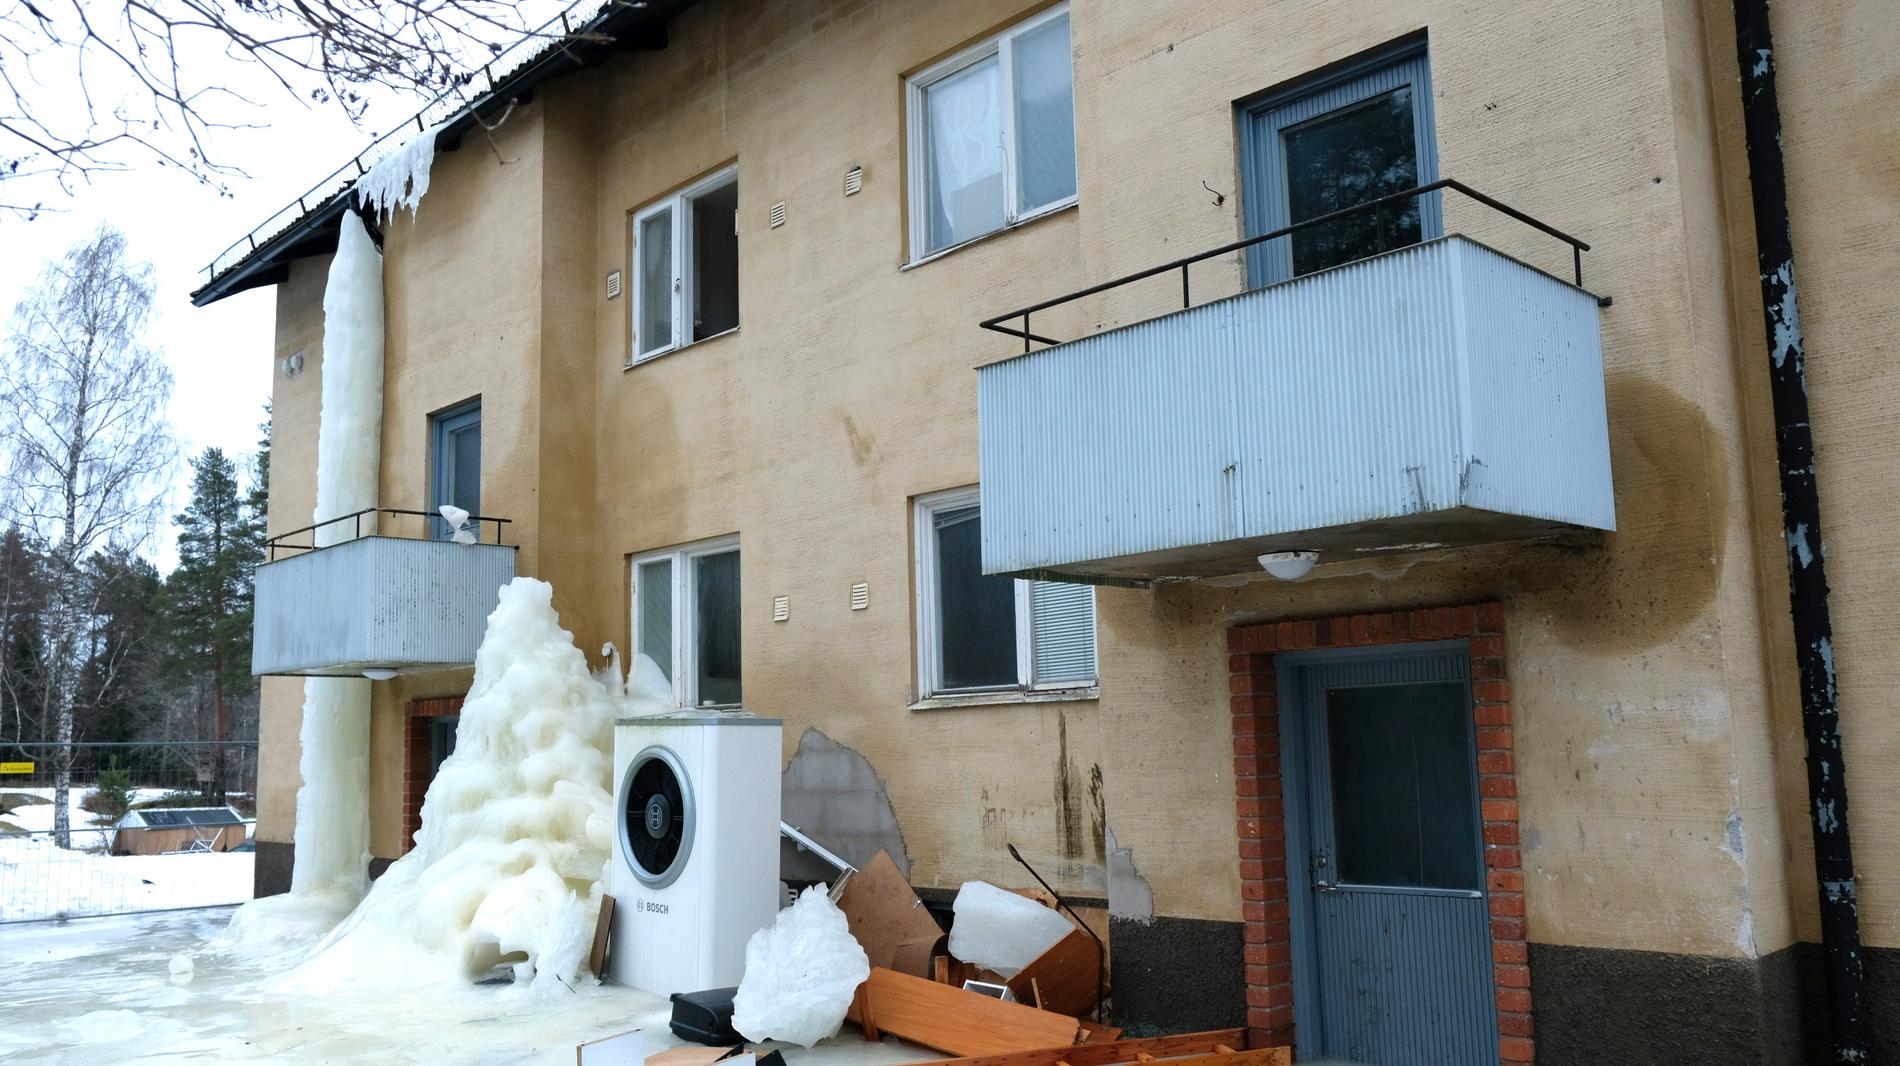 Isen smälter sakta på de fallfärdiga huset i Blötberget. Just här bor ingen längre, men grannhuset som är in nästan lika dåligt skick är fortfarande bebott.